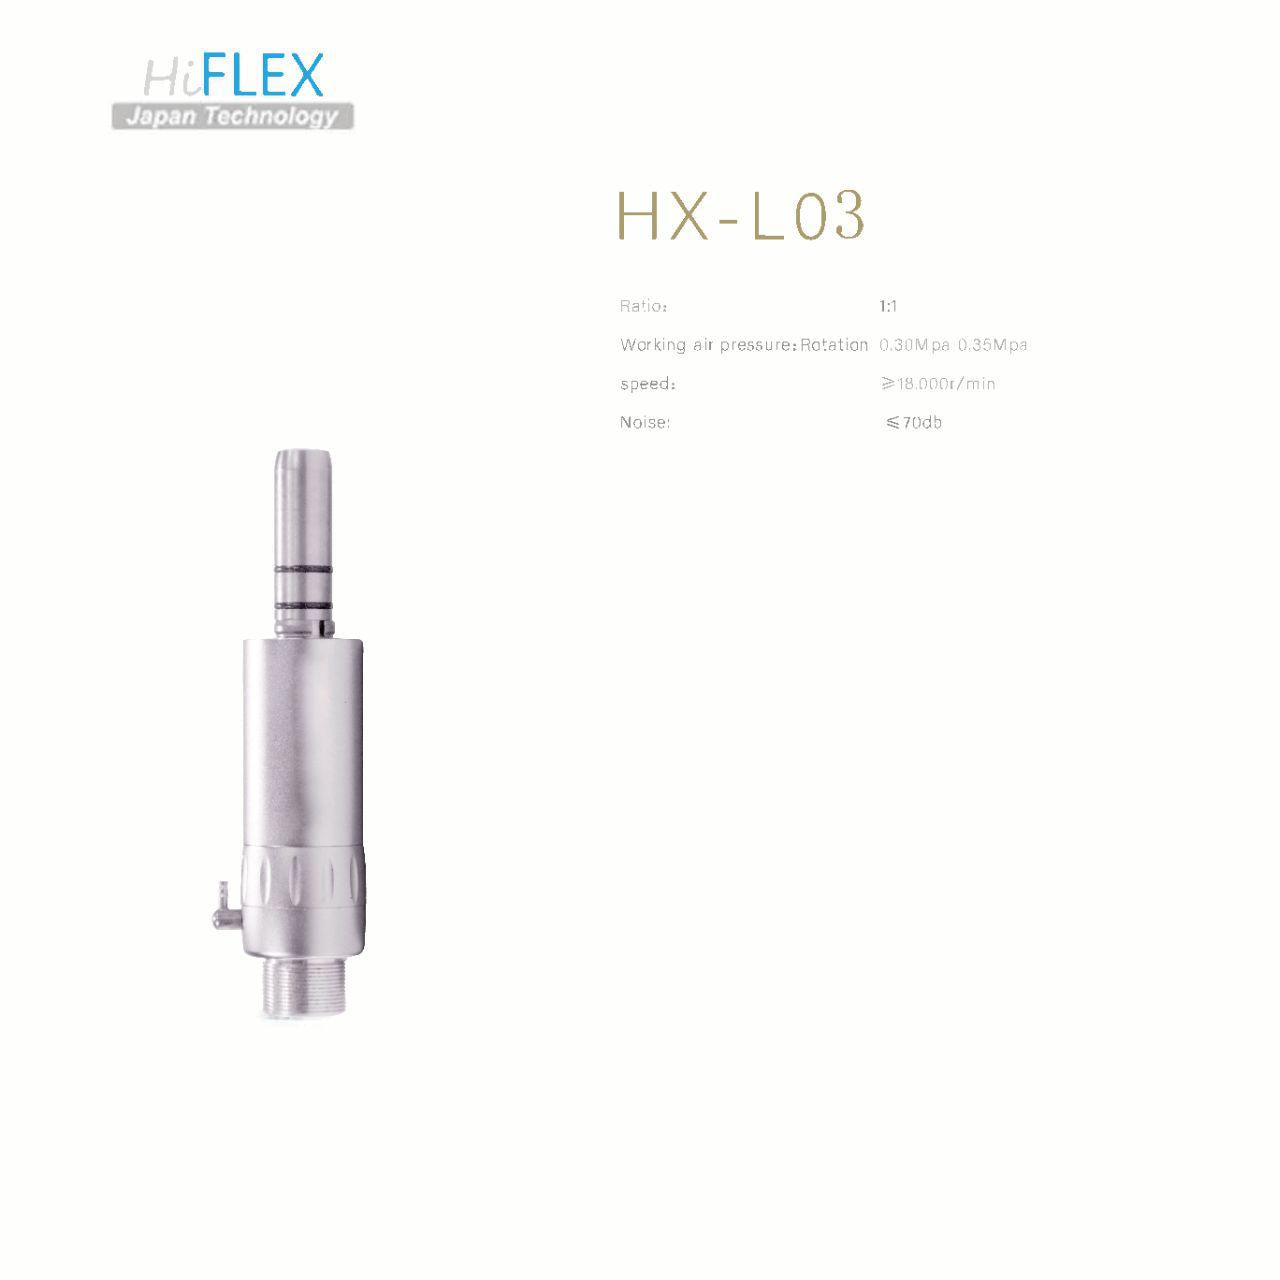 HiFlex Low Speed Handpiece